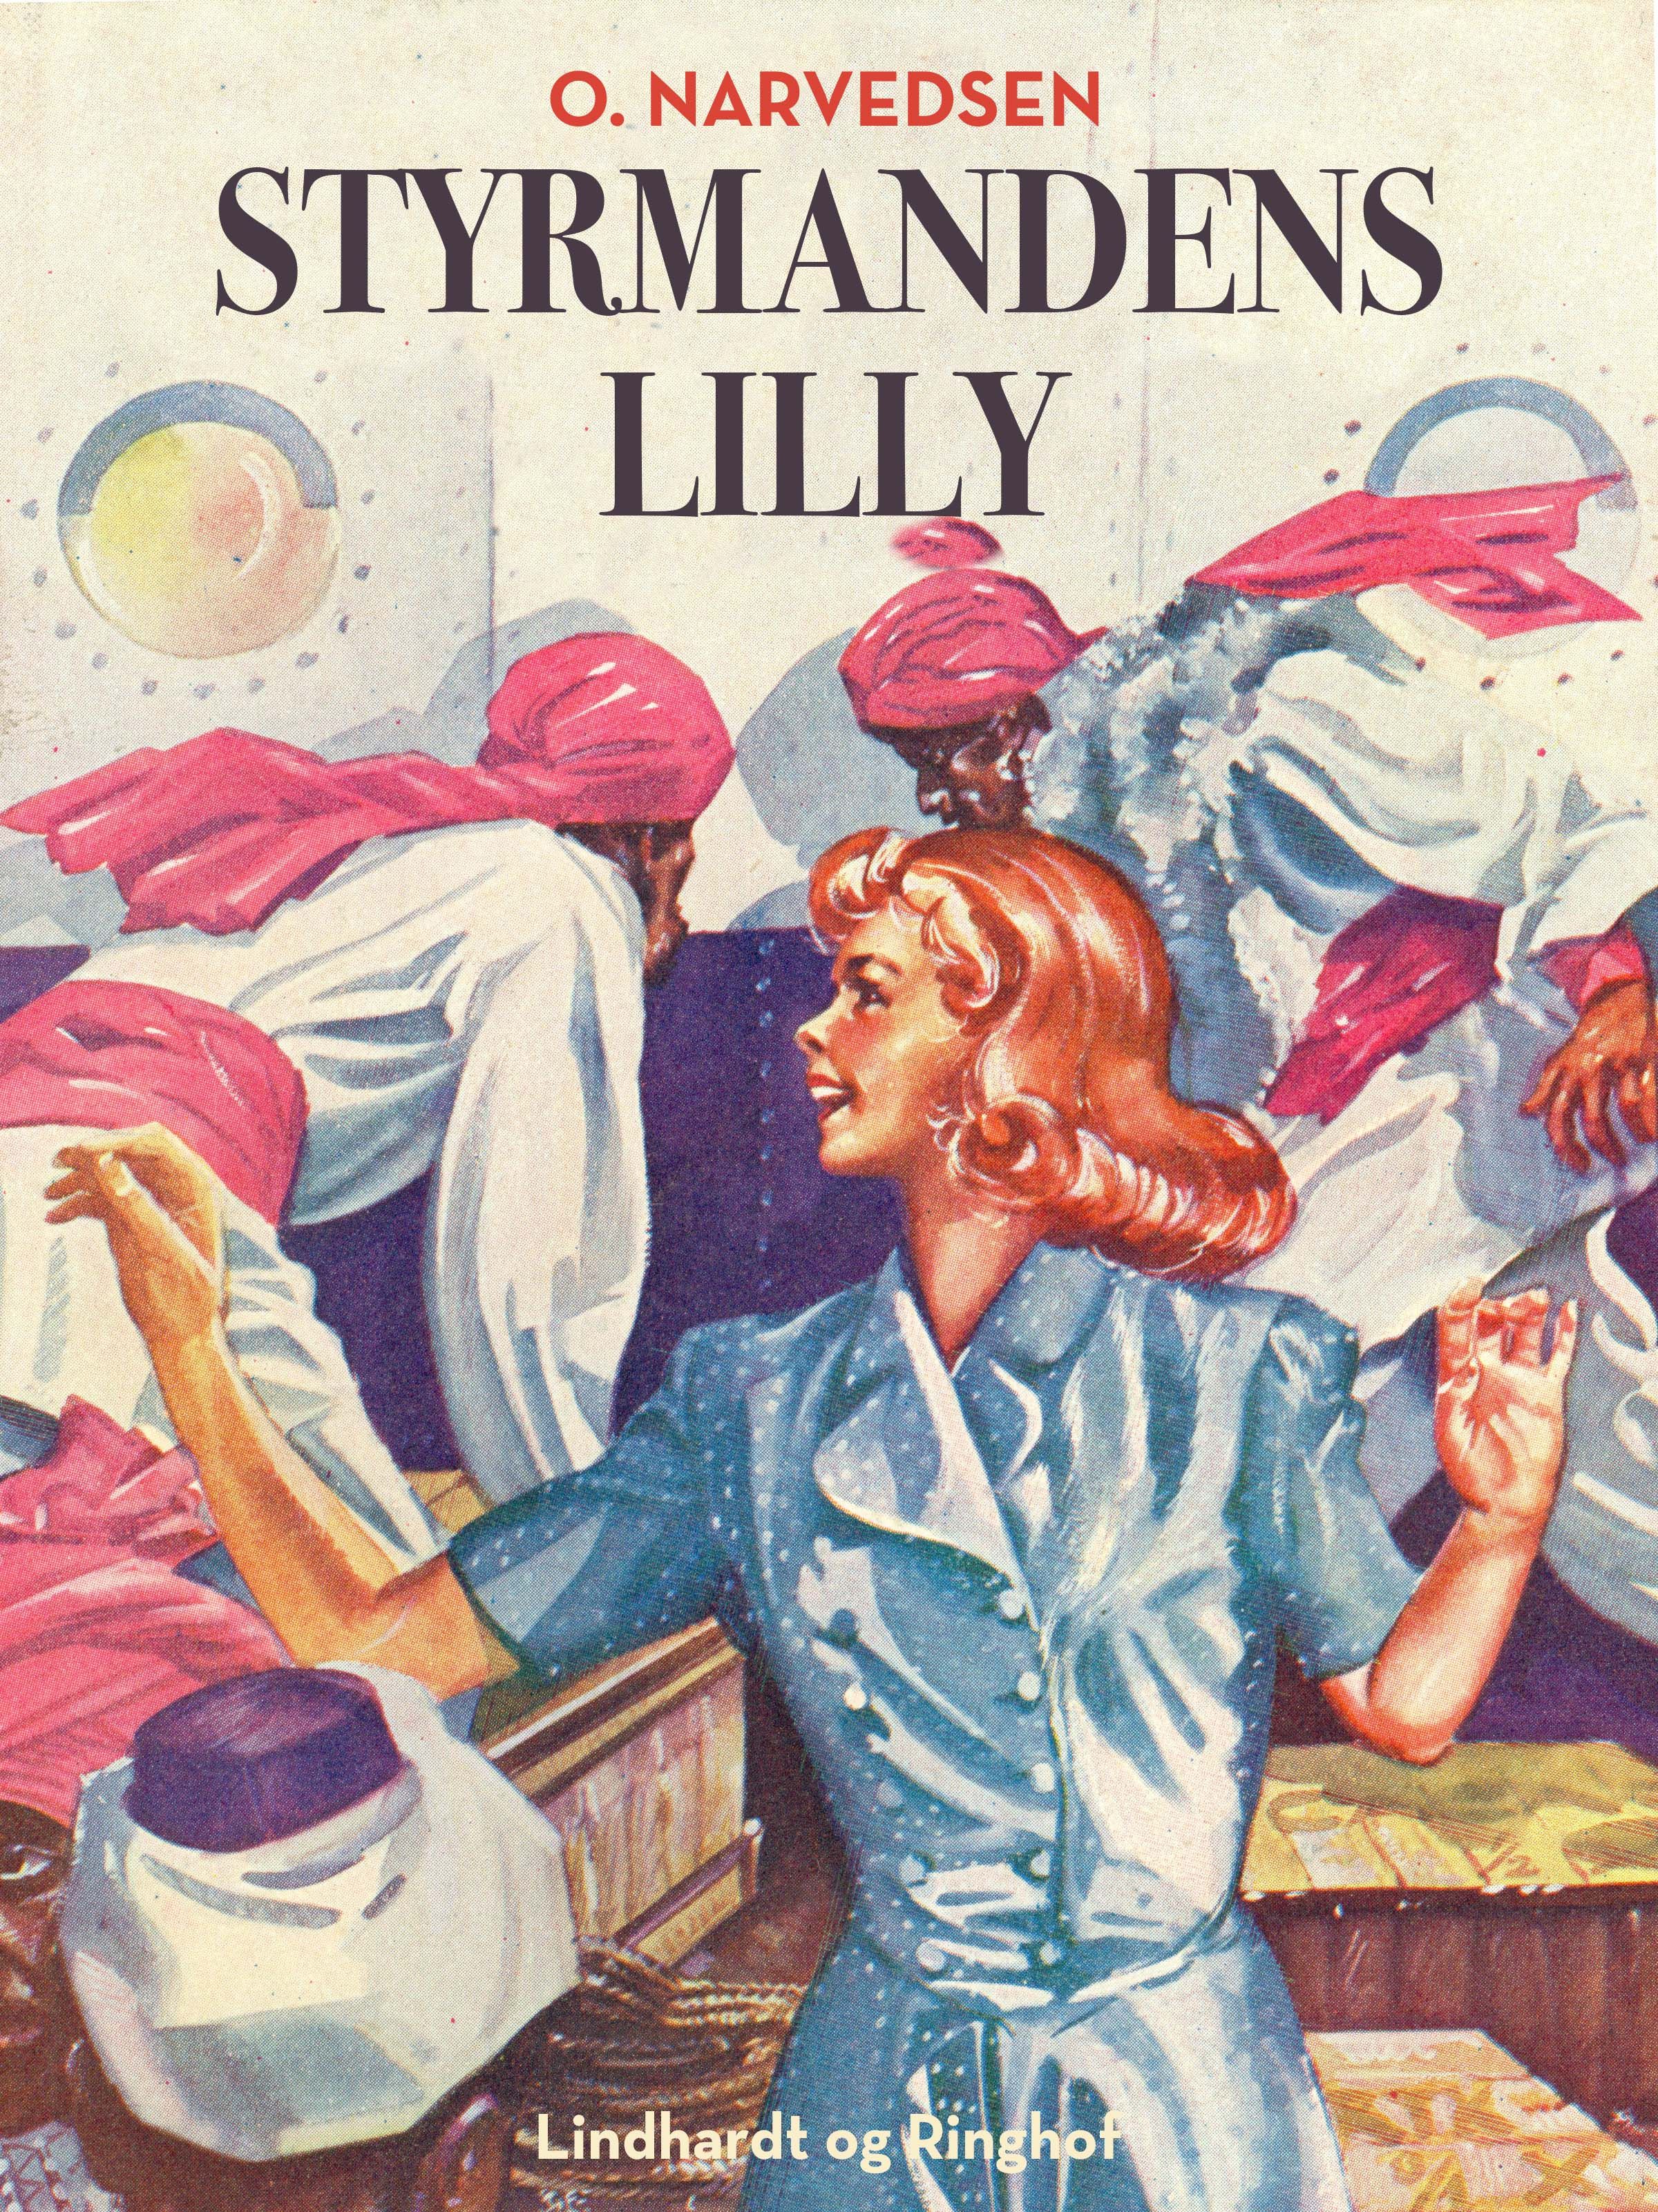 Styrmandens Lilly, e-bok av Orla Narvedsen